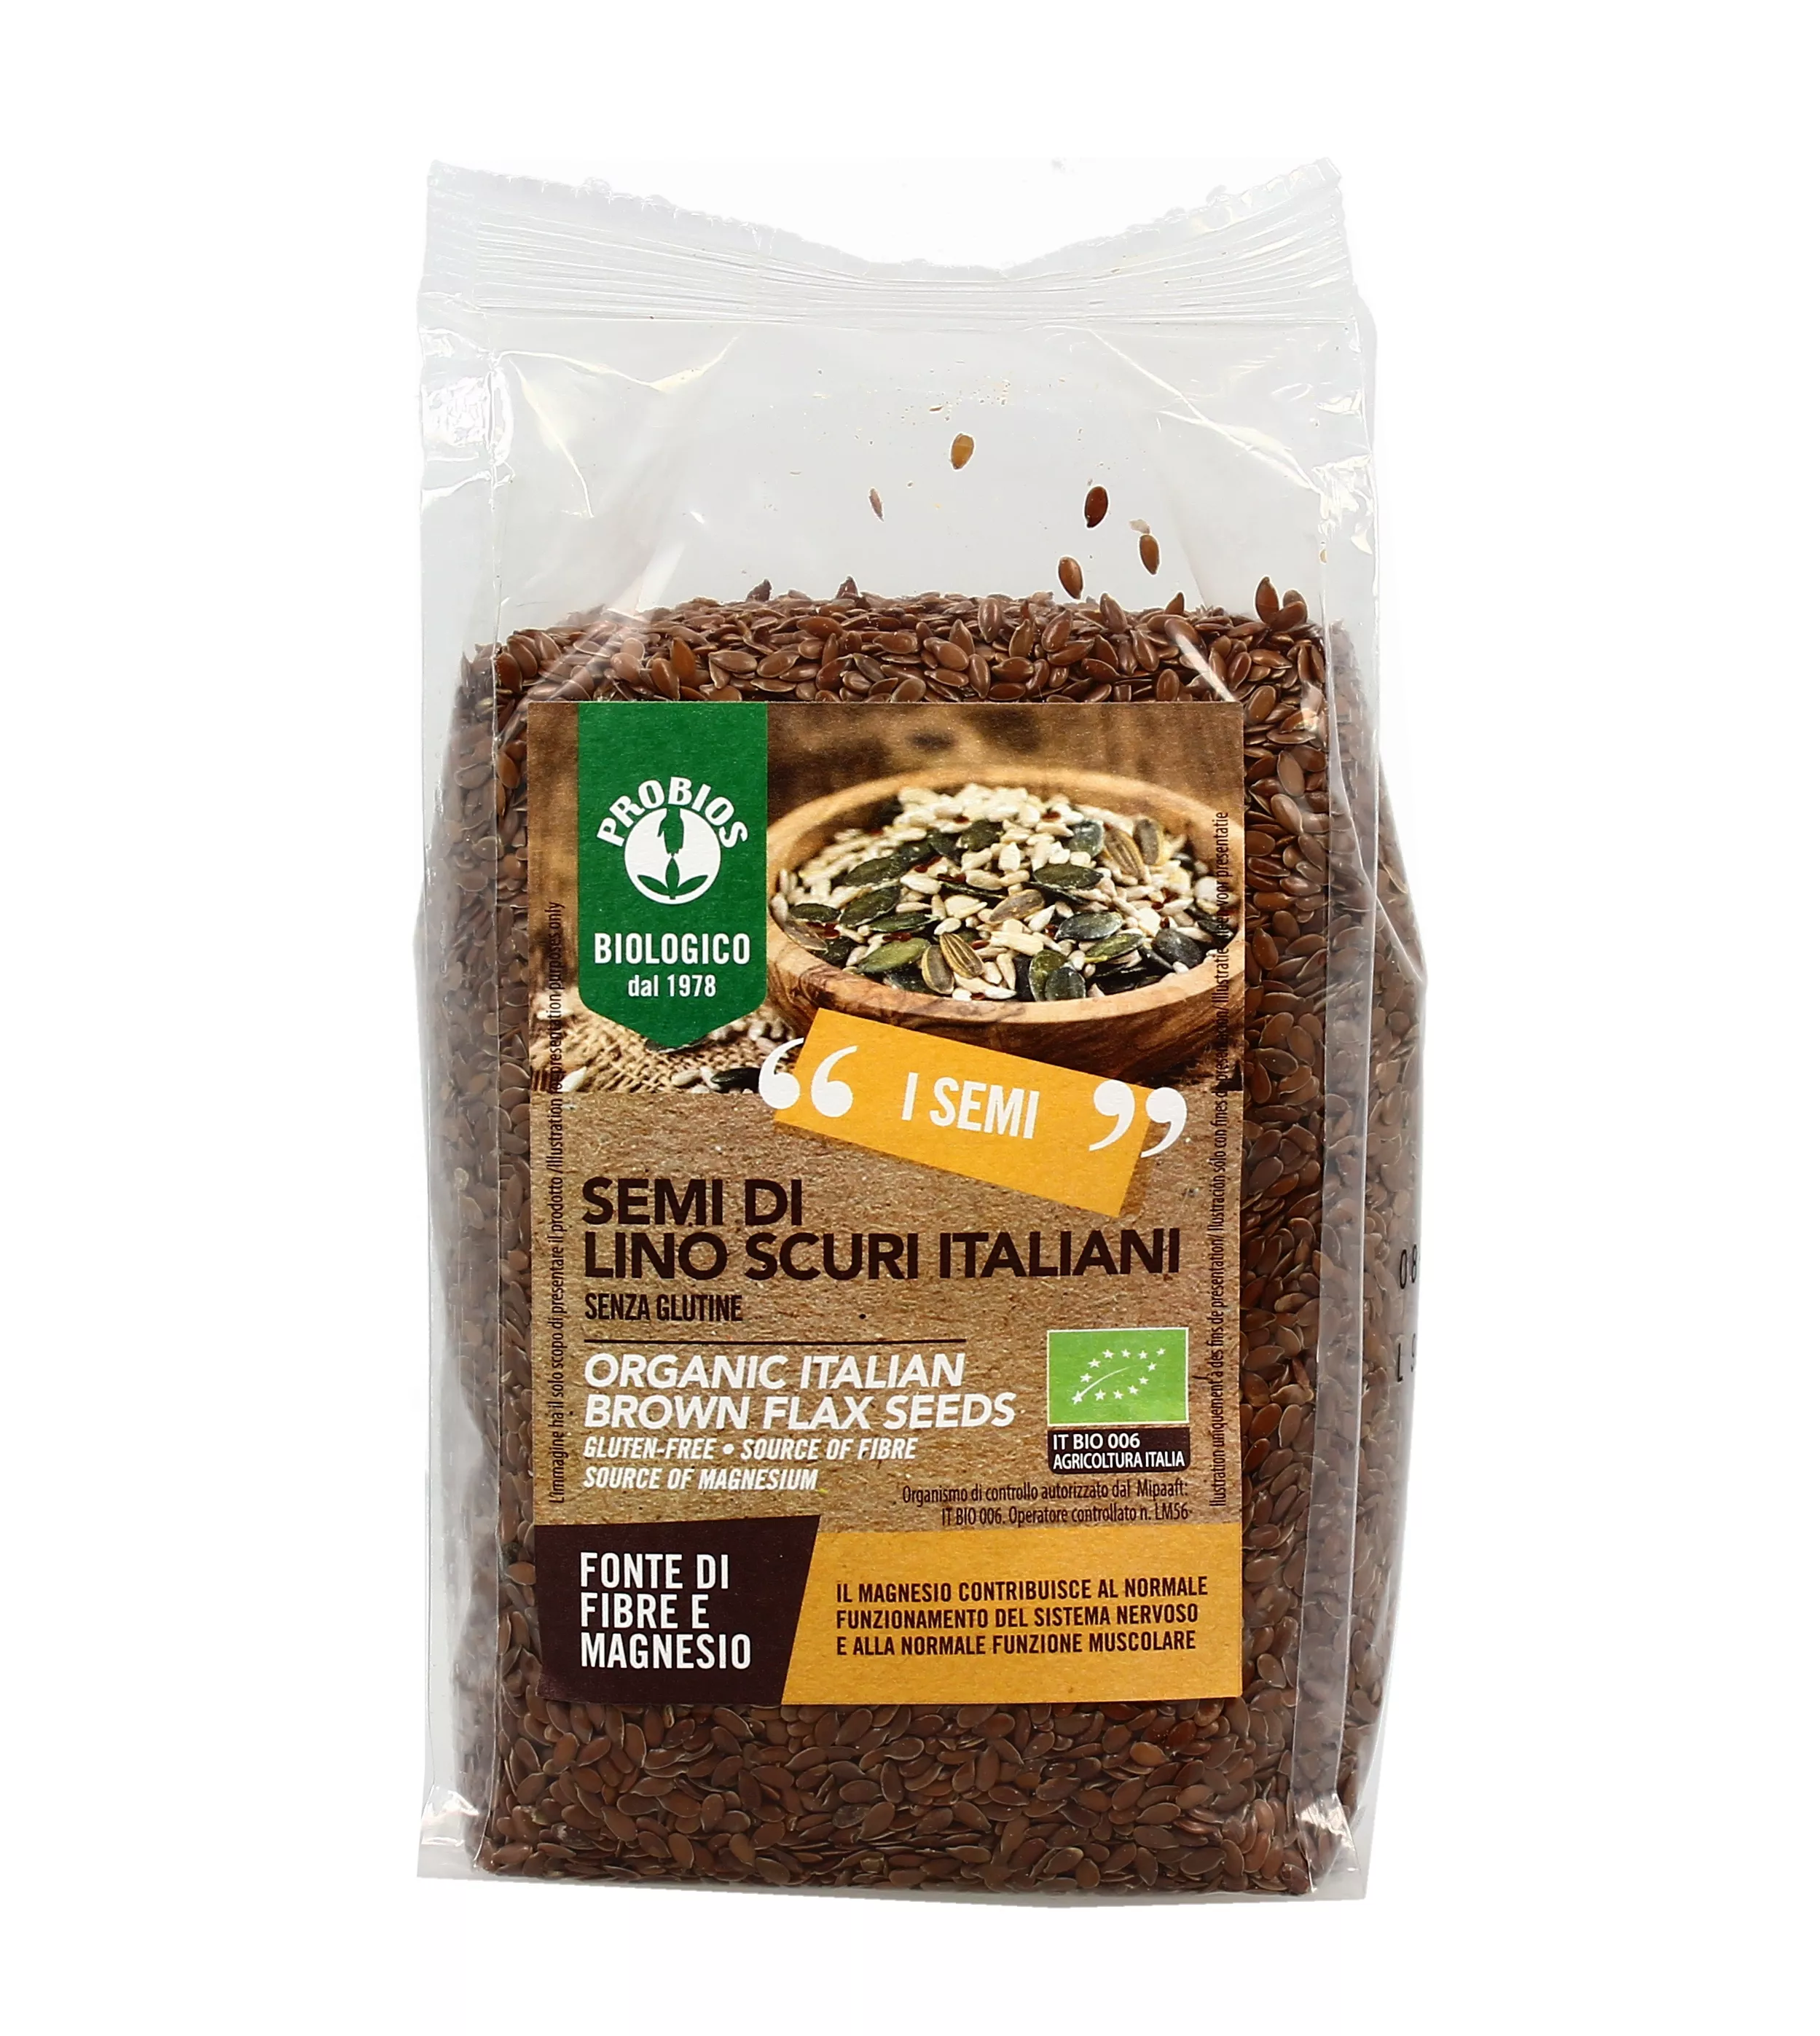 Farina di semi di lino: proprietà e 10 modi per utilizzarla nelle ricette